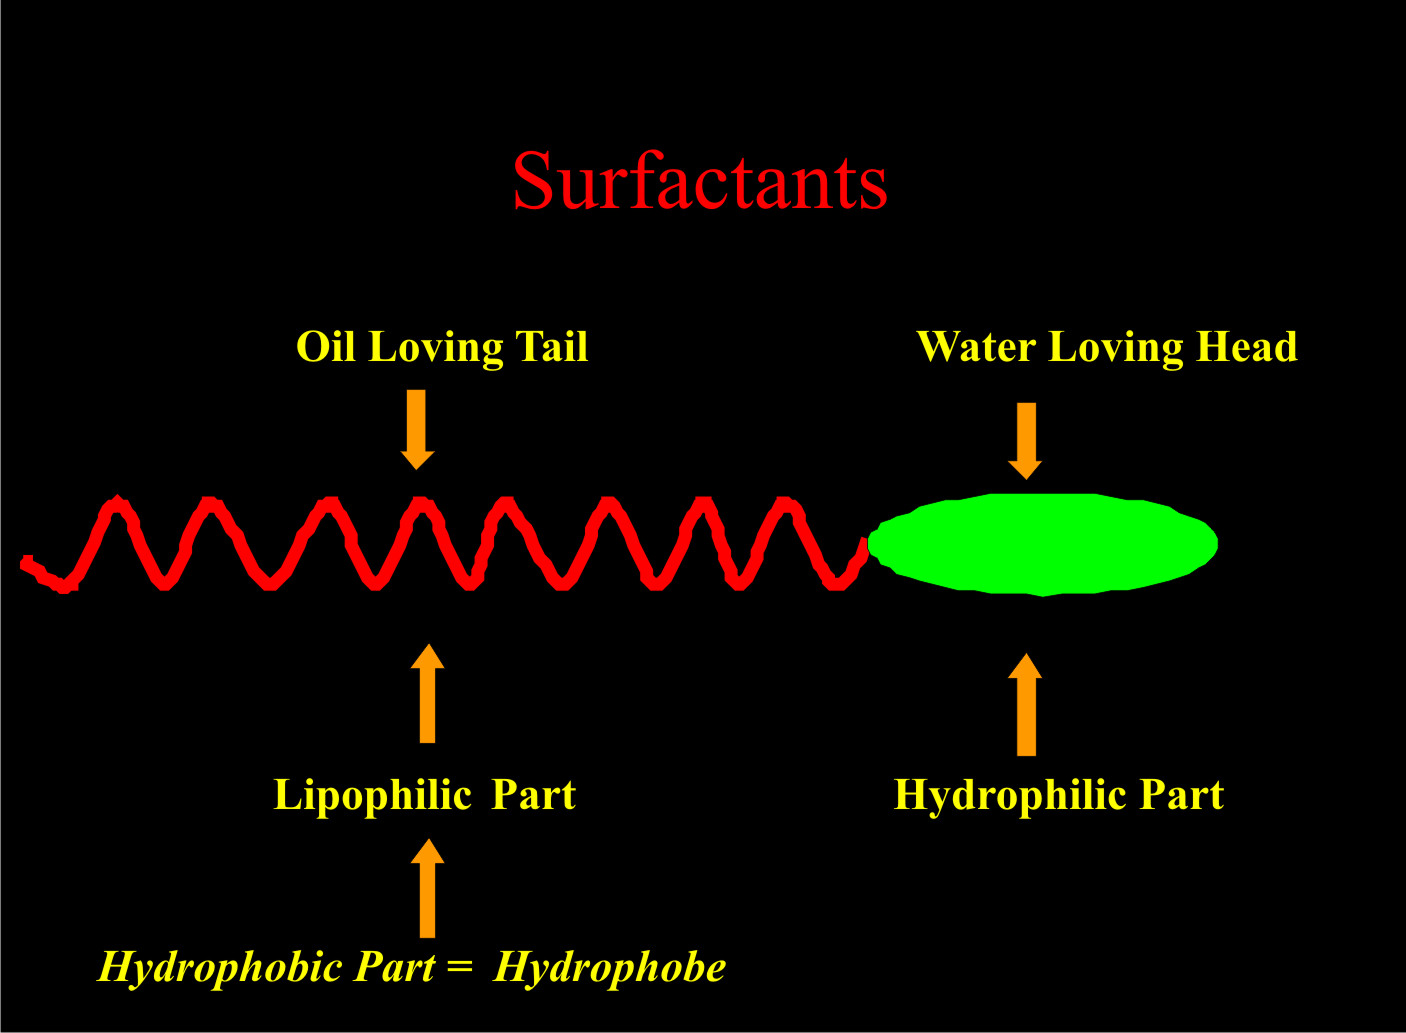 Components of a surfactant molecule